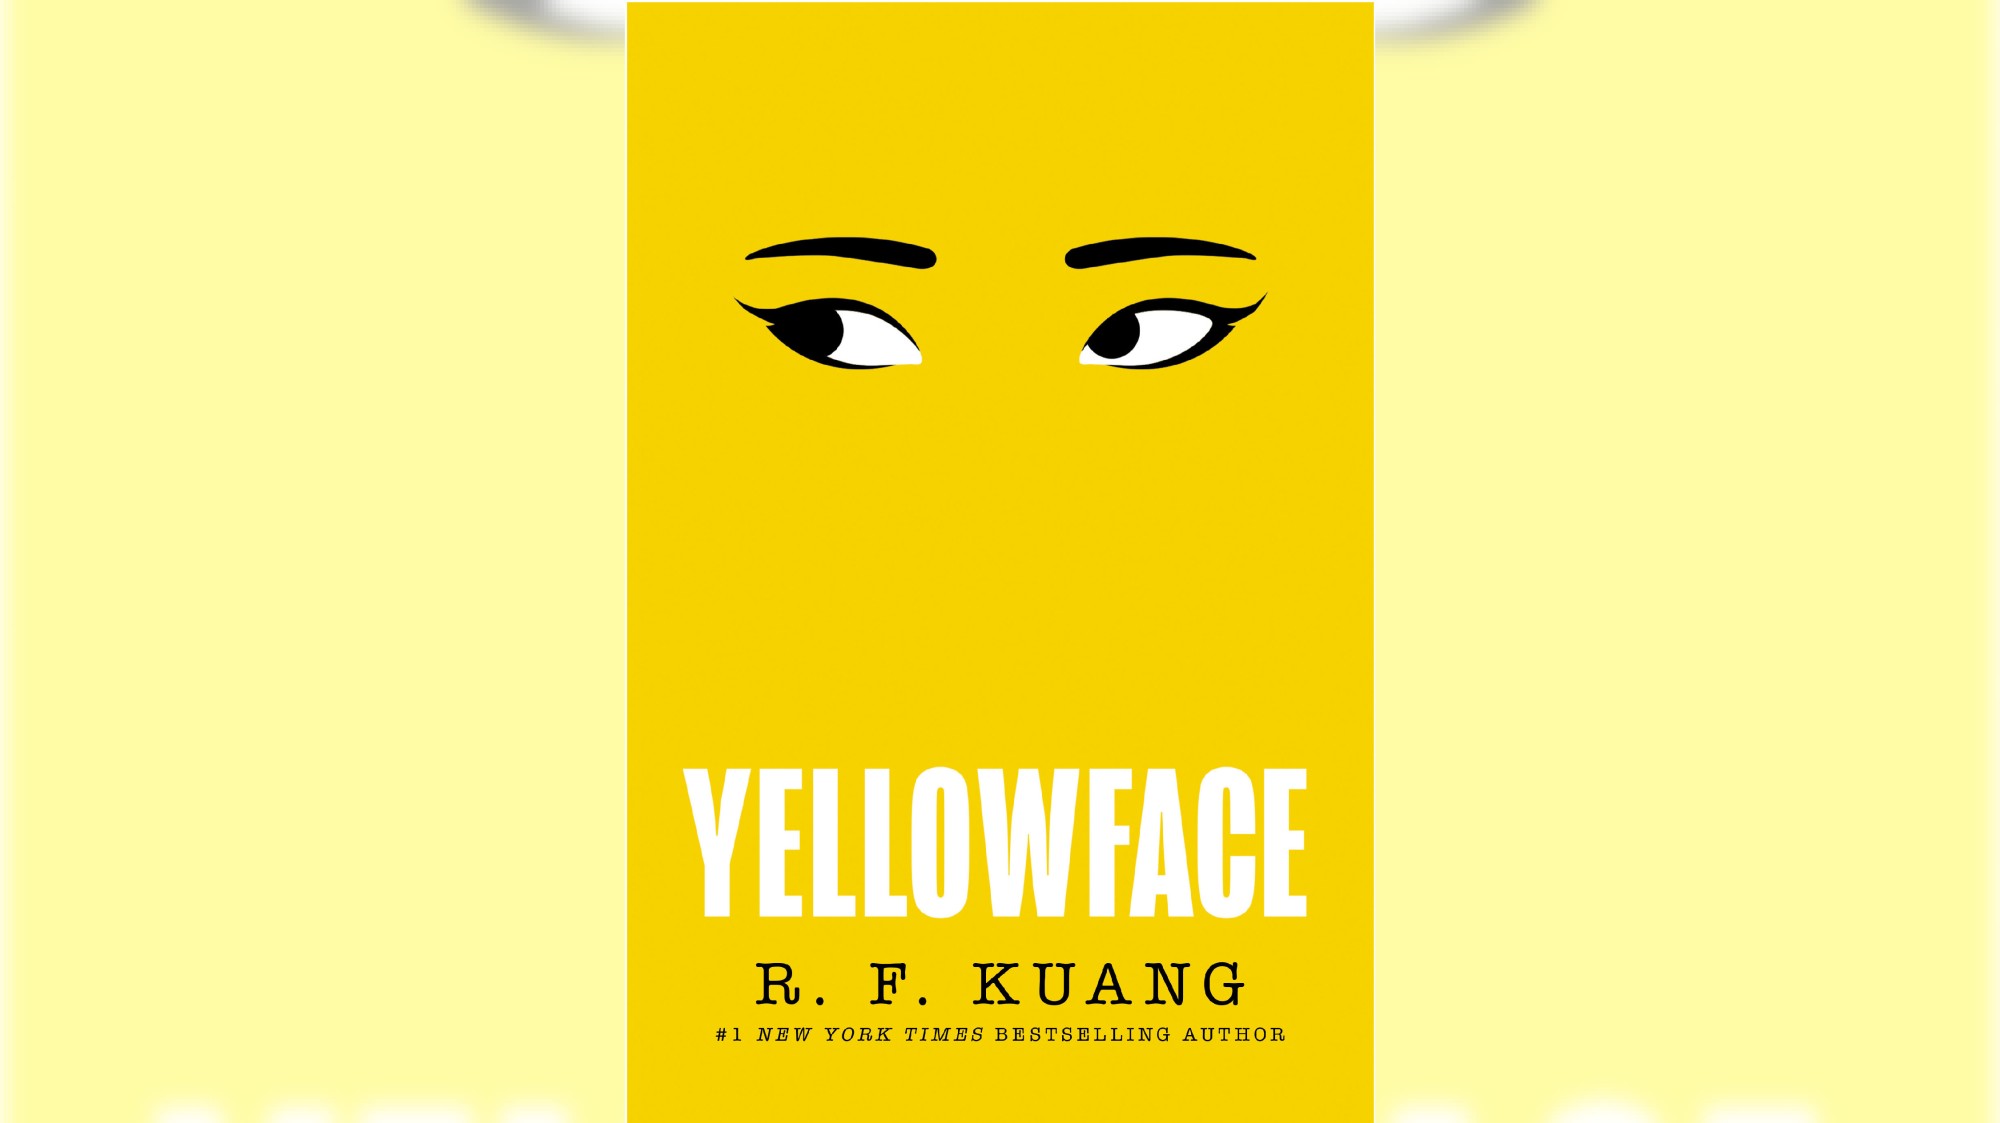 “Yellowface旷水的新小说,是最畅销小说之一释放在加州南部的独立书店。(由威廉·莫罗)